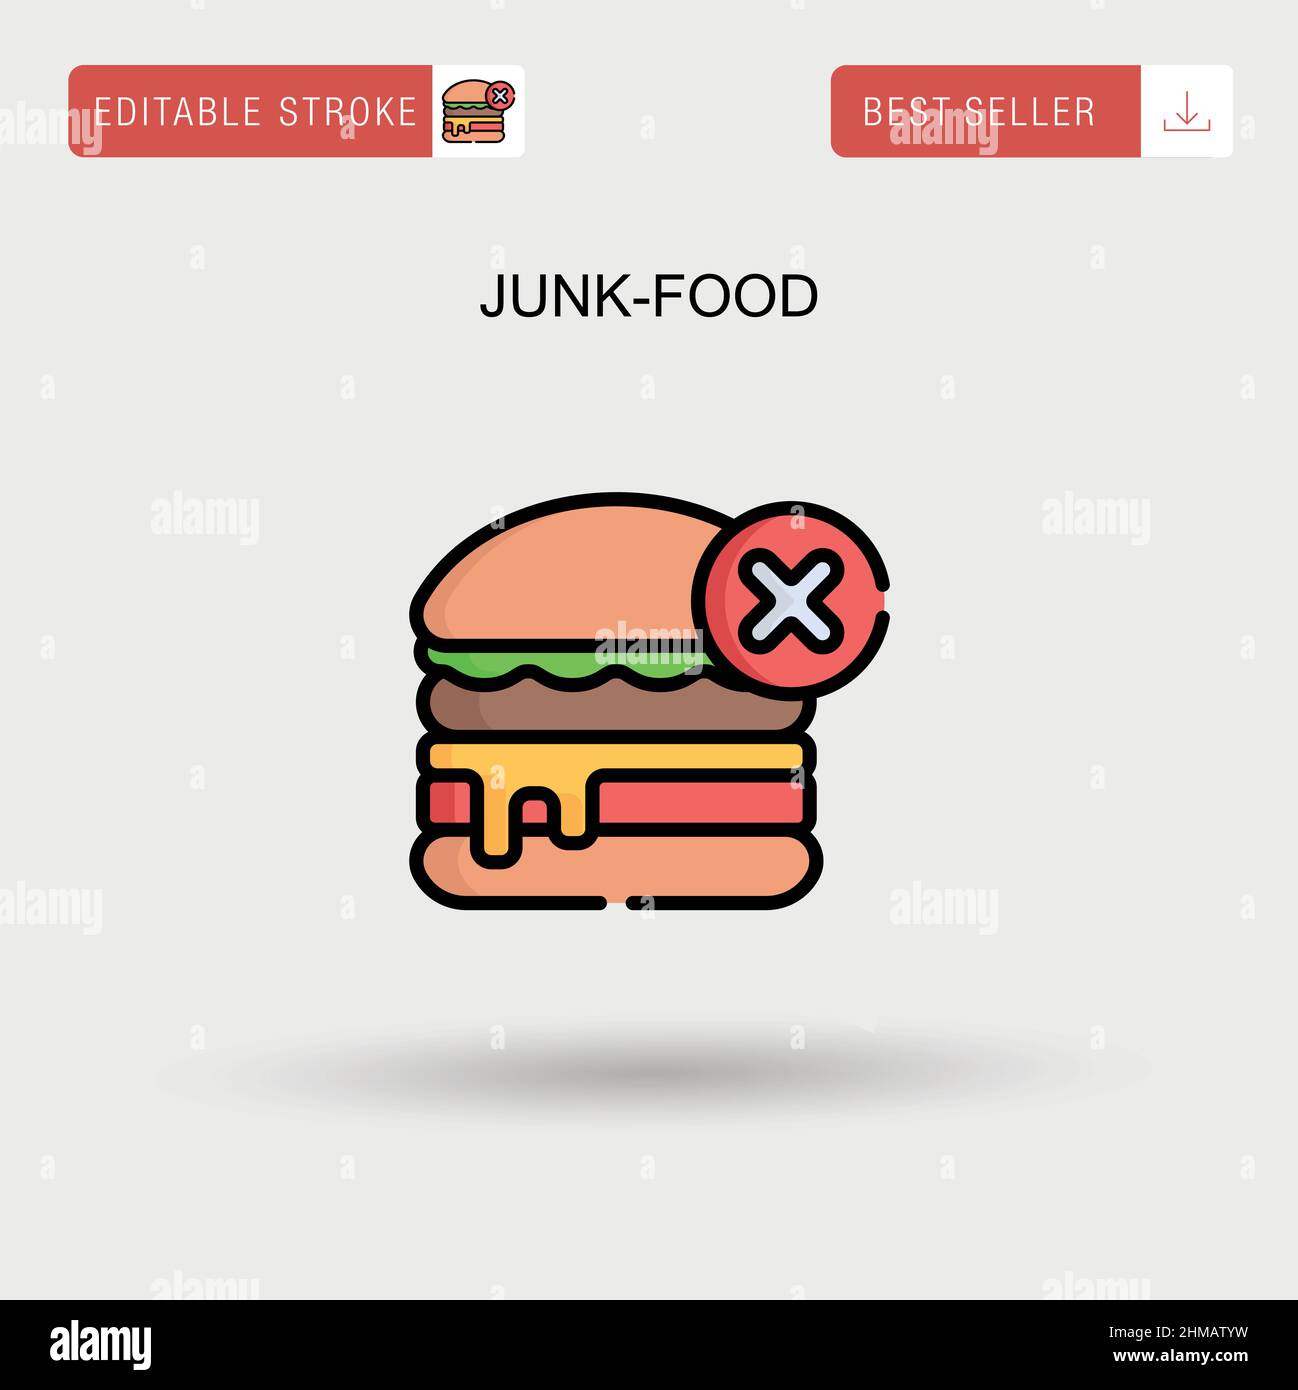 Junk-food Simple vector icon. Stock Vector